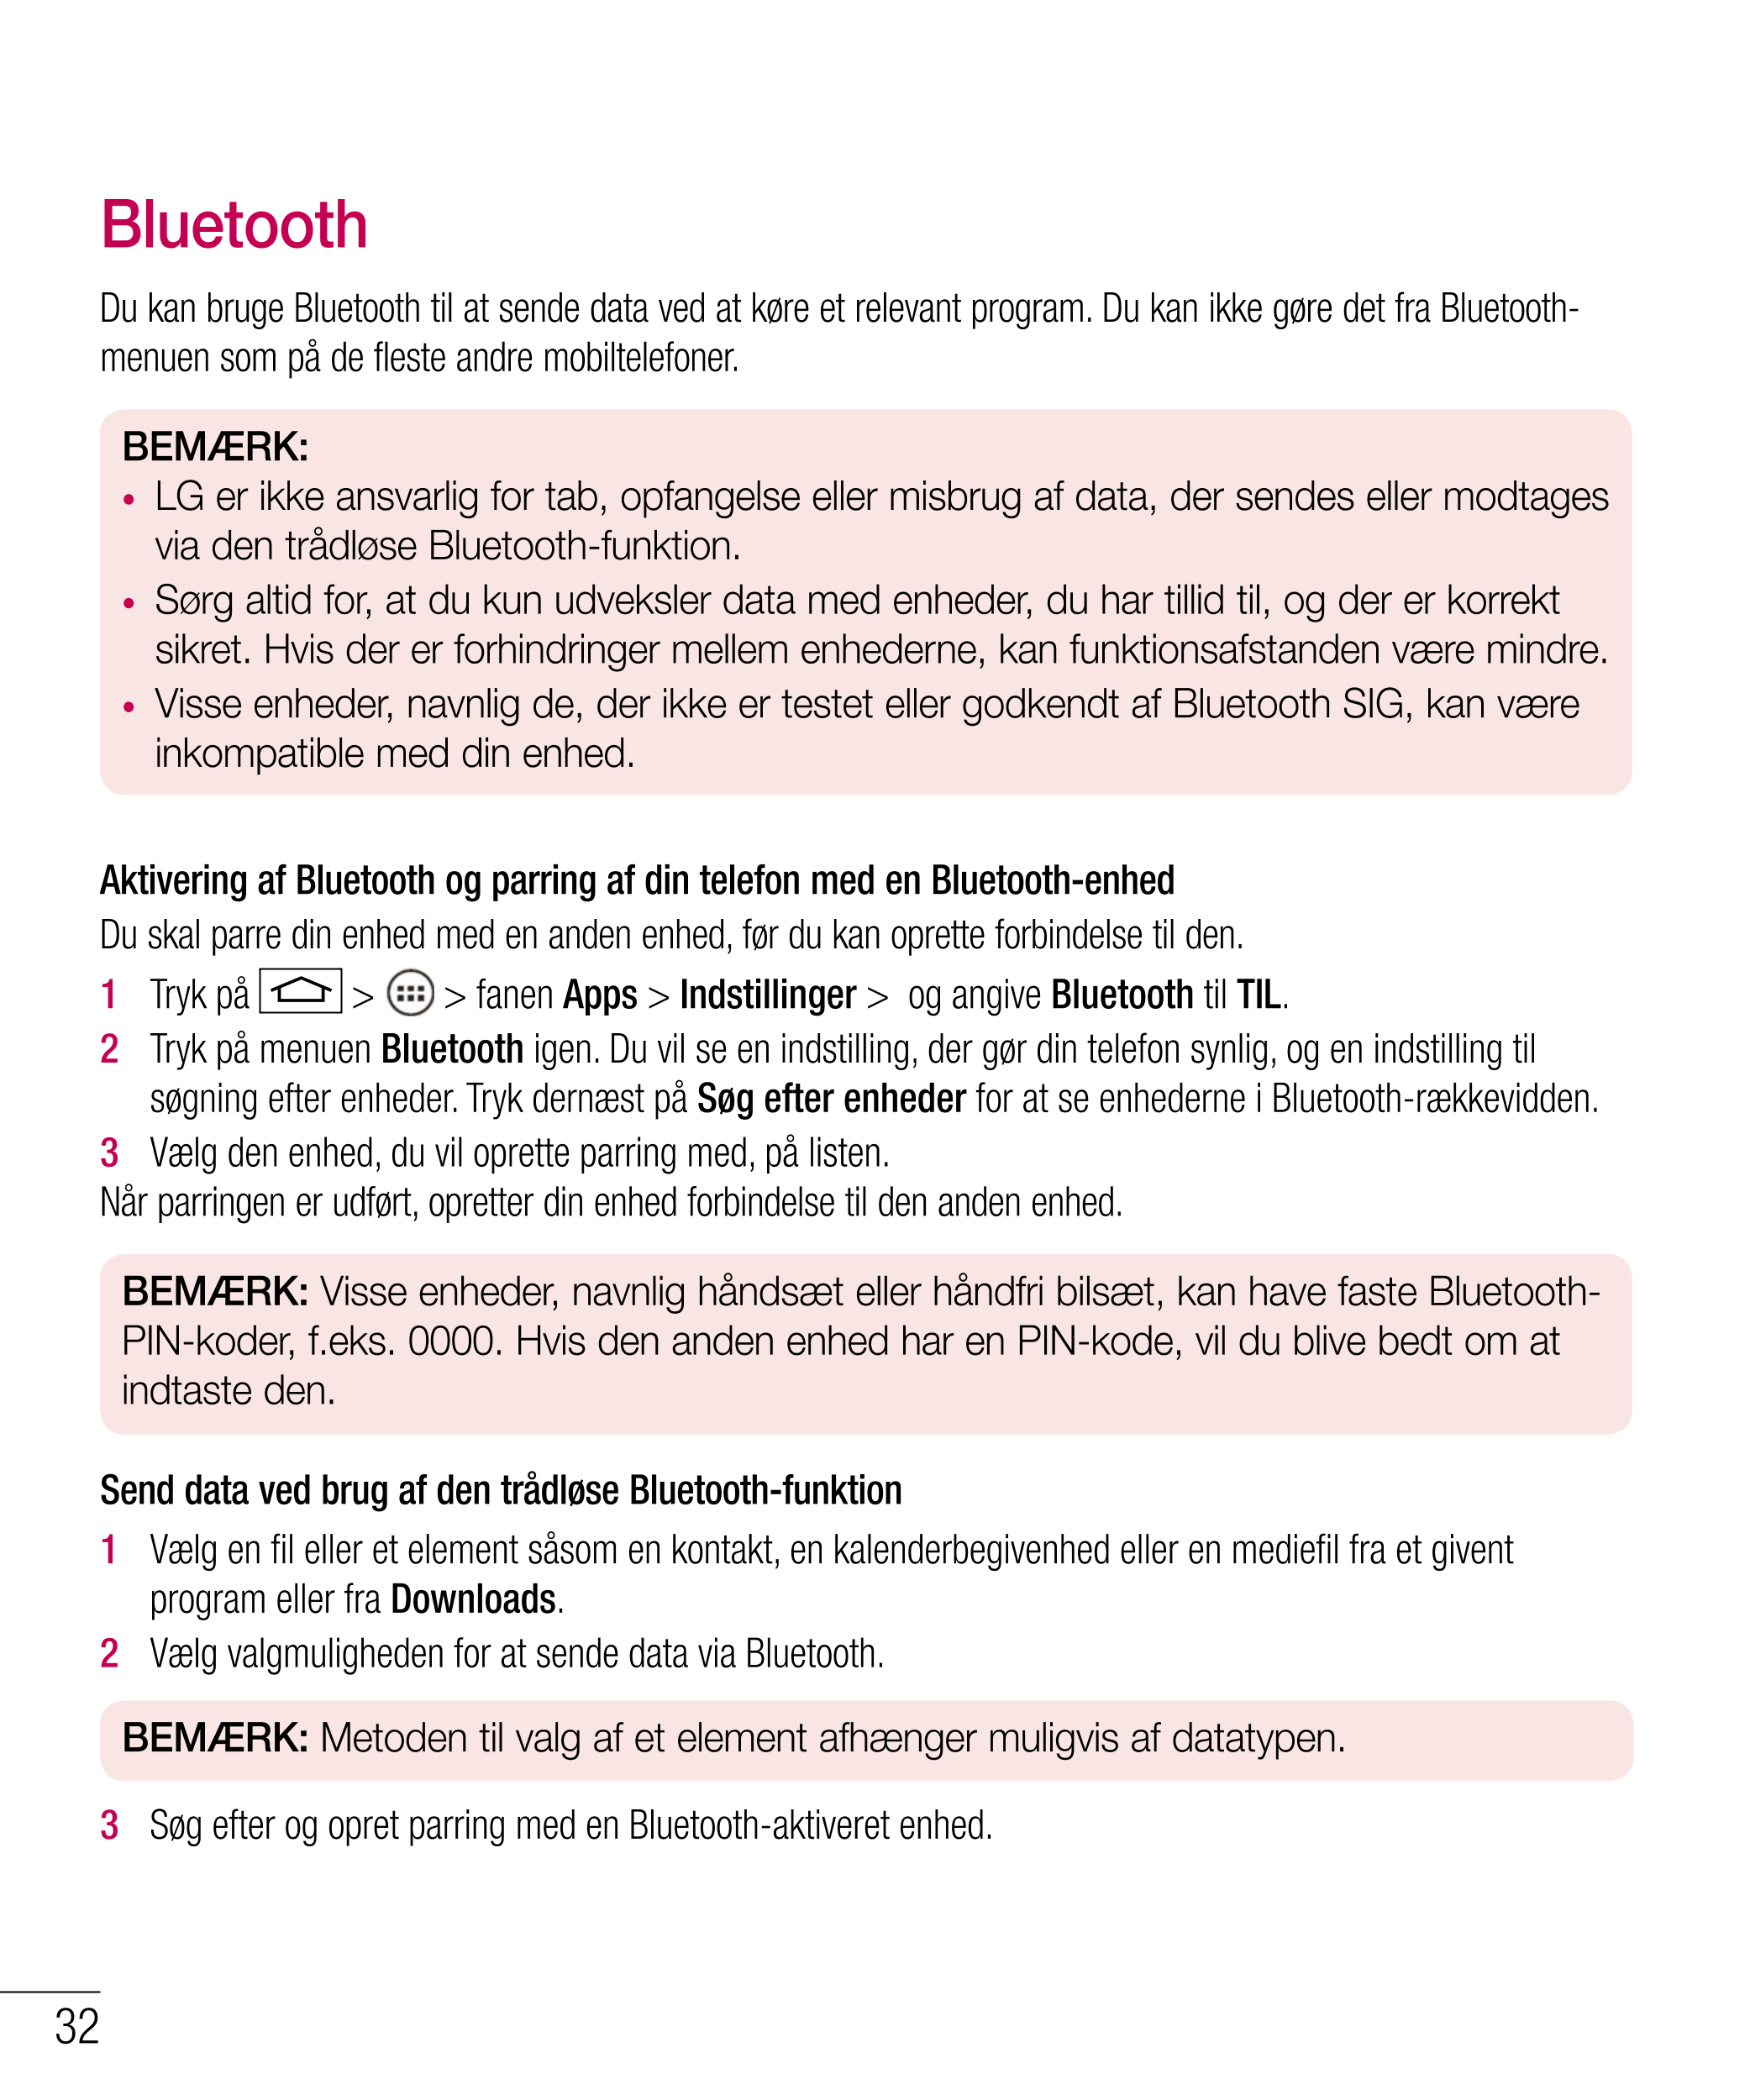 Bluetooth
Du kan bruge Bluetooth til at sende data ved at køre et relevant program. Du kan ikke gøre det fra Bluetooth-
menuen s